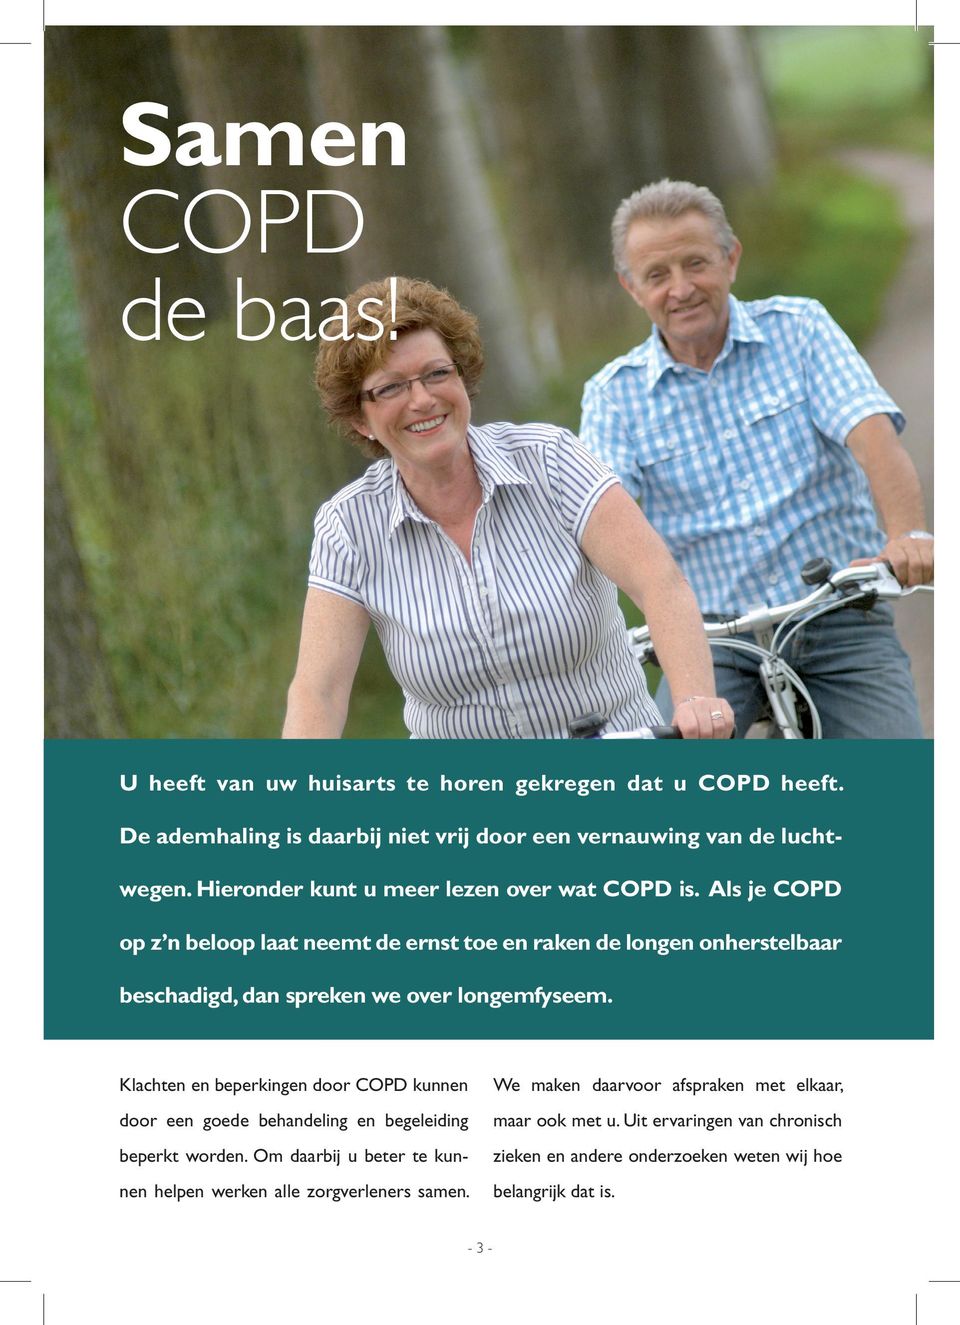 Als je COPD op z n beloop laat neemt de ernst toe en raken de longen onherstelbaar beschadigd, dan spreken we over longemfyseem.